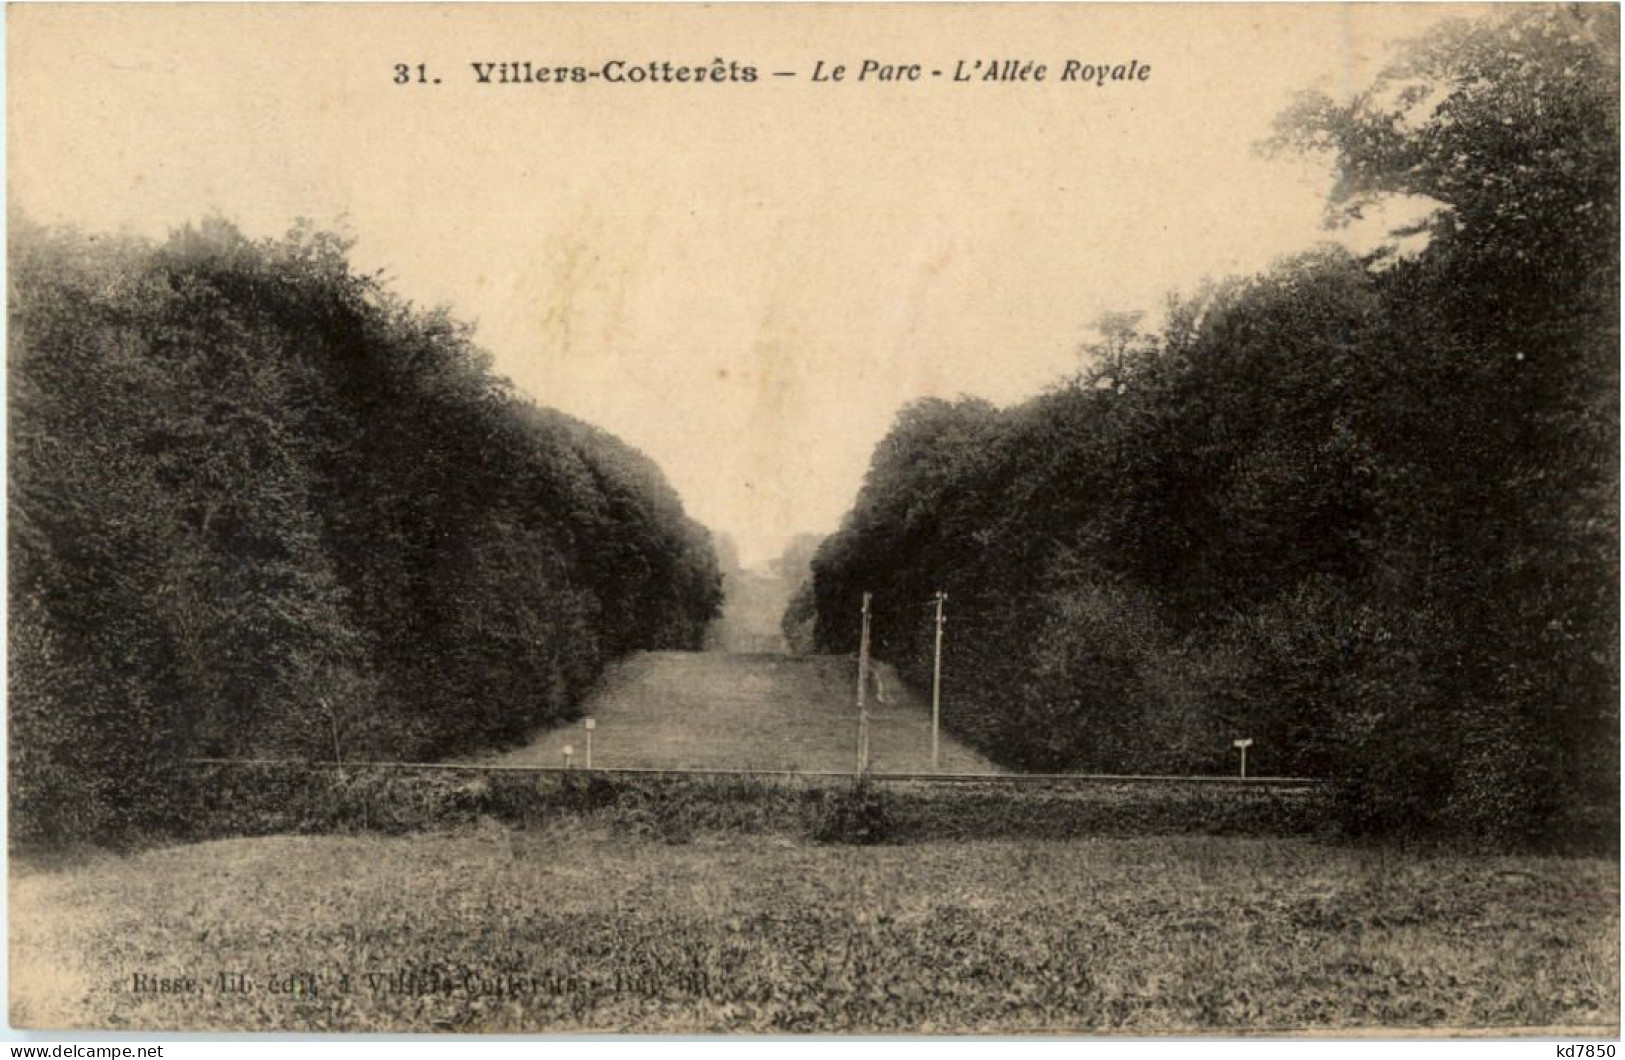 Villers Cotterets - Le Parc - Villers Cotterets